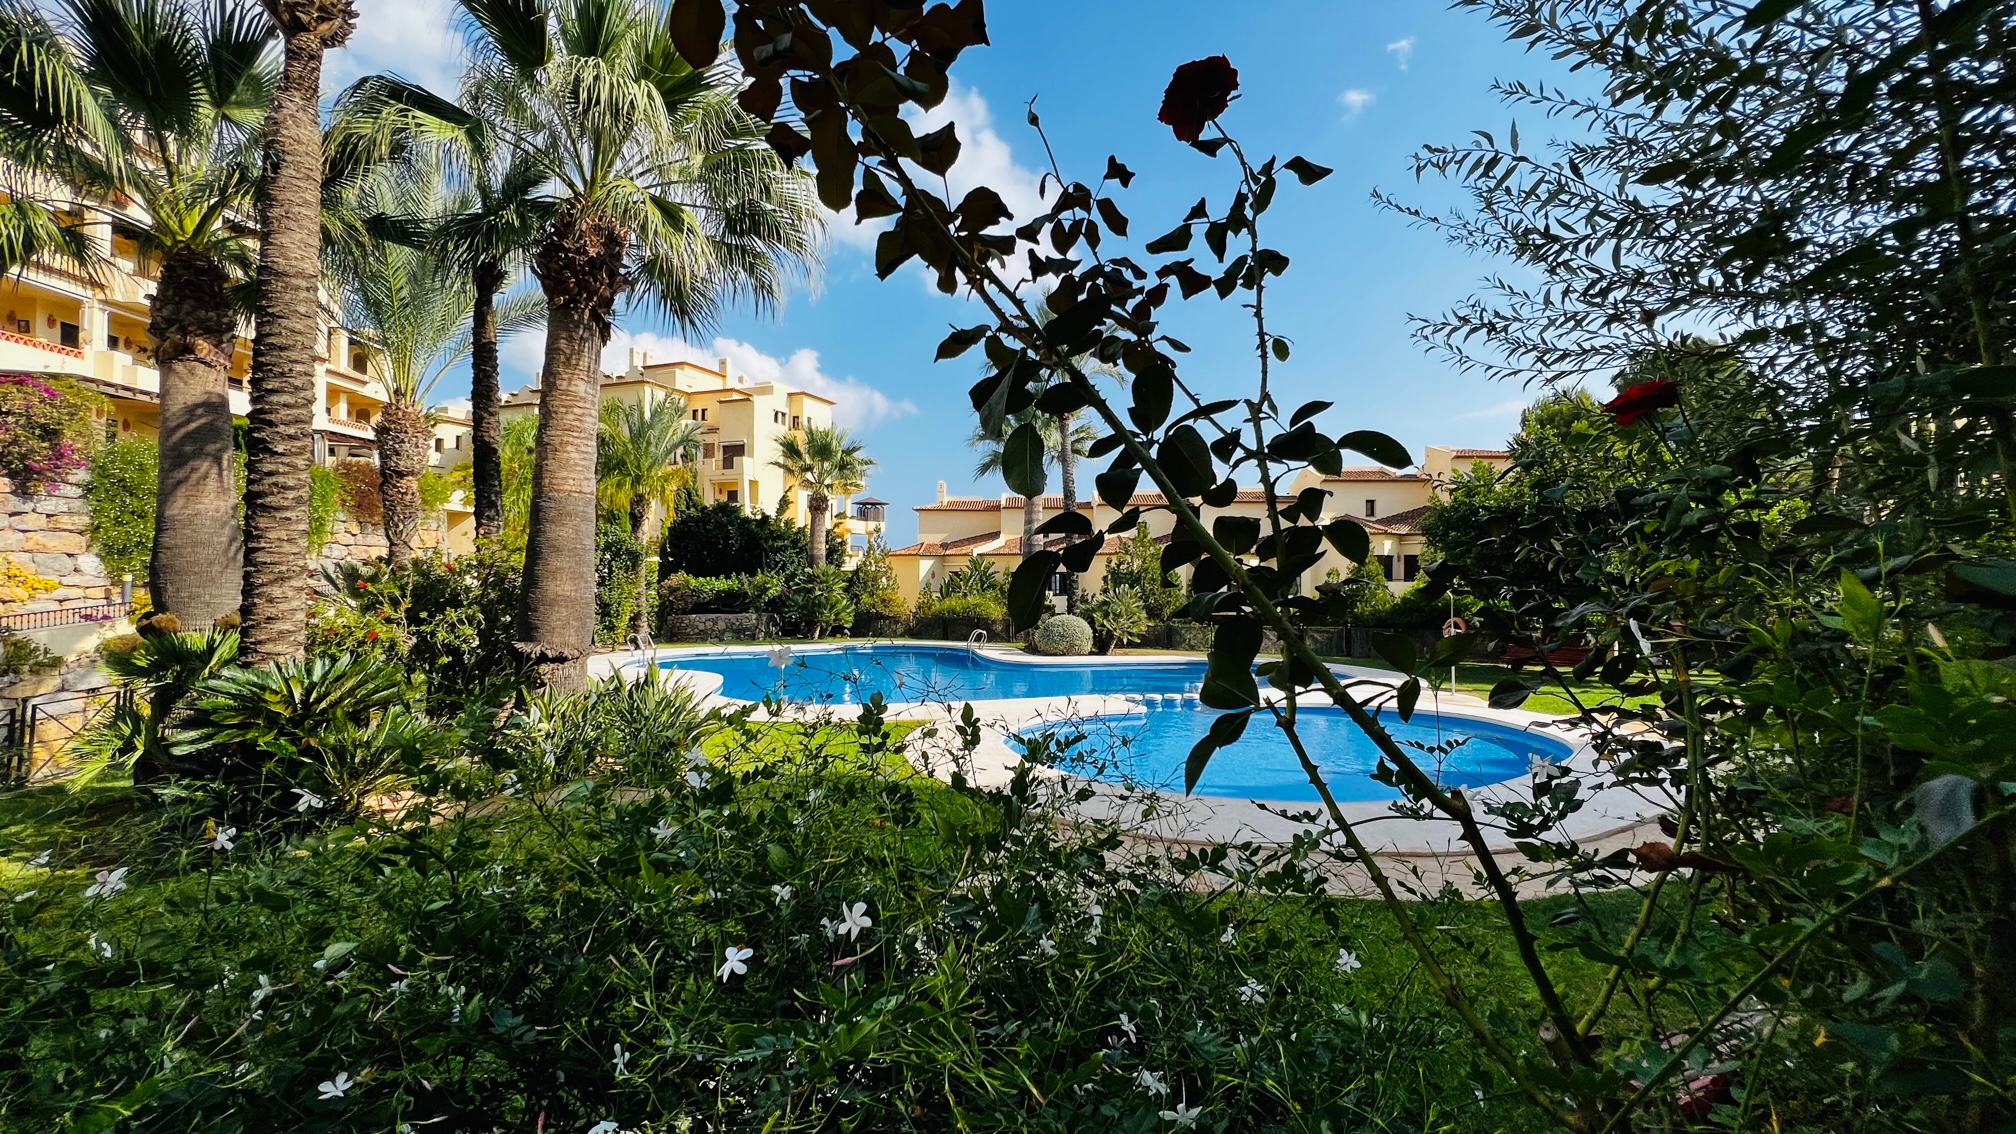 Appartement rez-de-chaussée avec deux chambres et jardin dons le complexe de luxe de la première ligne de la mer, Villa-Gadea, Altea.Le parking est compris dans le prix